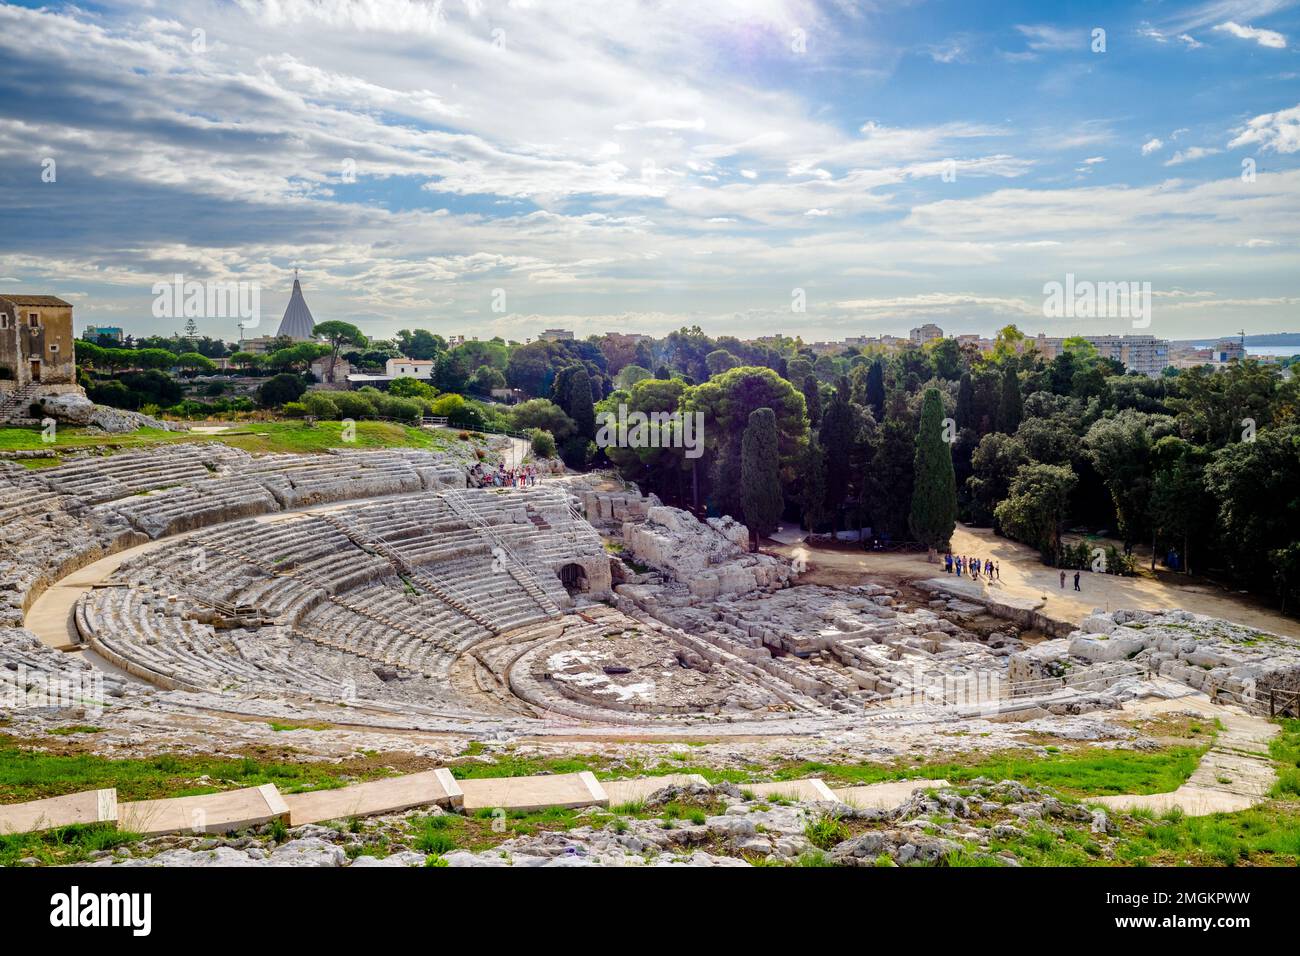 Das griechische Theater von Syracuse ist ein Theater im Archäologischen Park von Neapolis, an den Pisten auf der Südseite des Temeniten-Hügels, in Syrakus, Sizilien. Erbaut im 5. Jahrhundert v. Chr., wurde es dann im 3. Jahrhundert v. Chr. wieder aufgebaut. Und immer noch verwandelt in römischen Zeiten - Neapolis Archäologischer Park - Syrakus, Sizilien, Italien Stockfoto